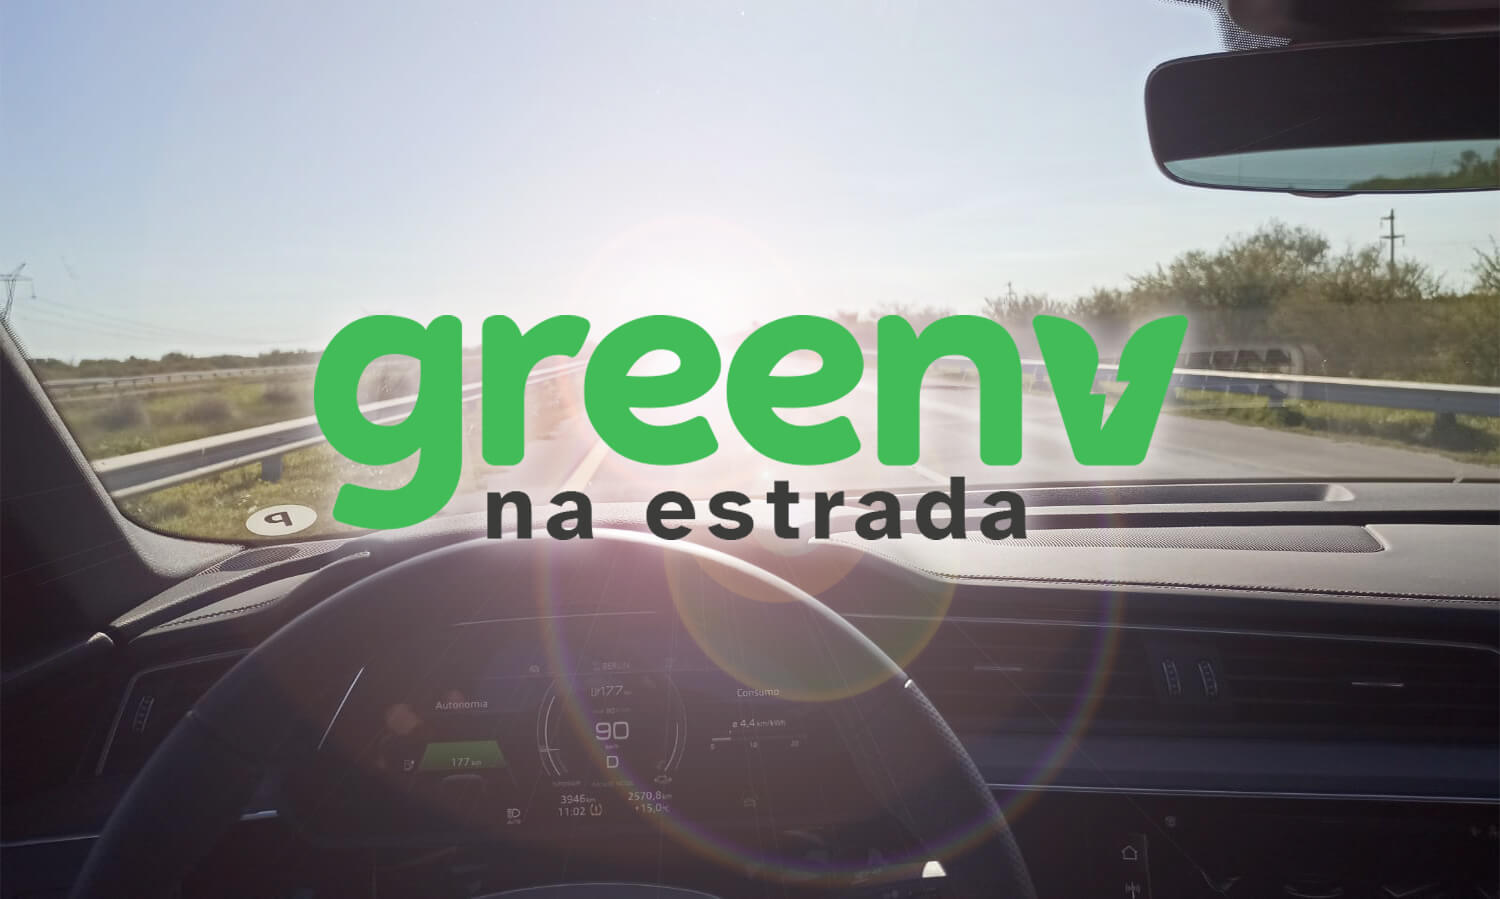 Fotografia colorida mostra a estrada, a partir da visão do interior de um carro. No centro da imagem temos os dizeres "GreenV na Estrada".